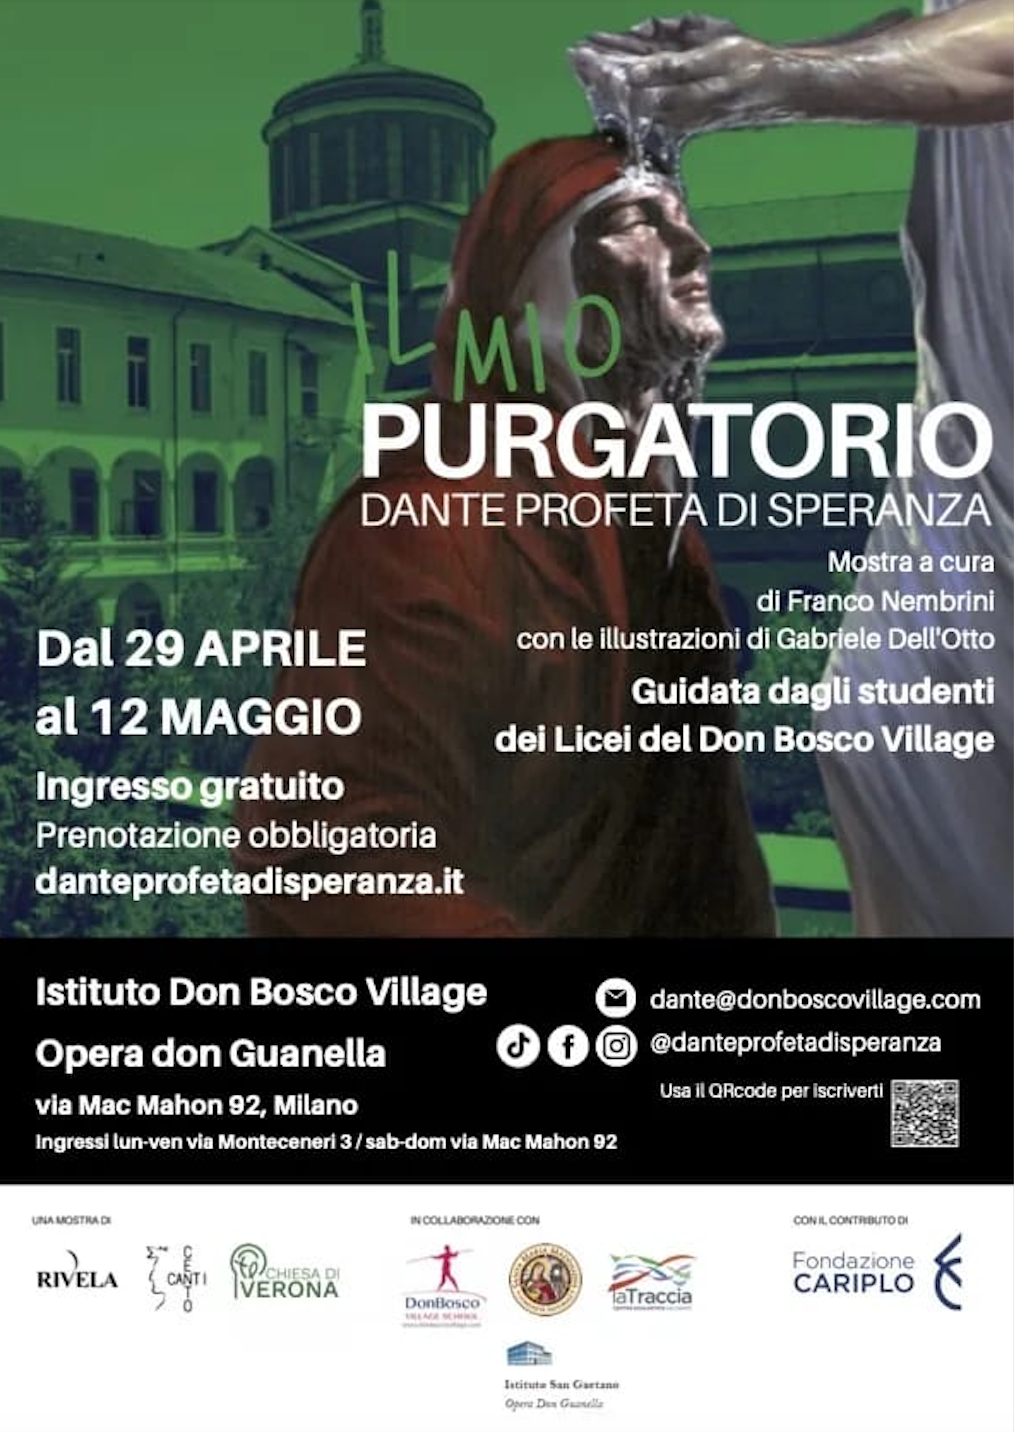 Featured image for “Milano: Il mio purgatorio, Dante profeta di speranza”